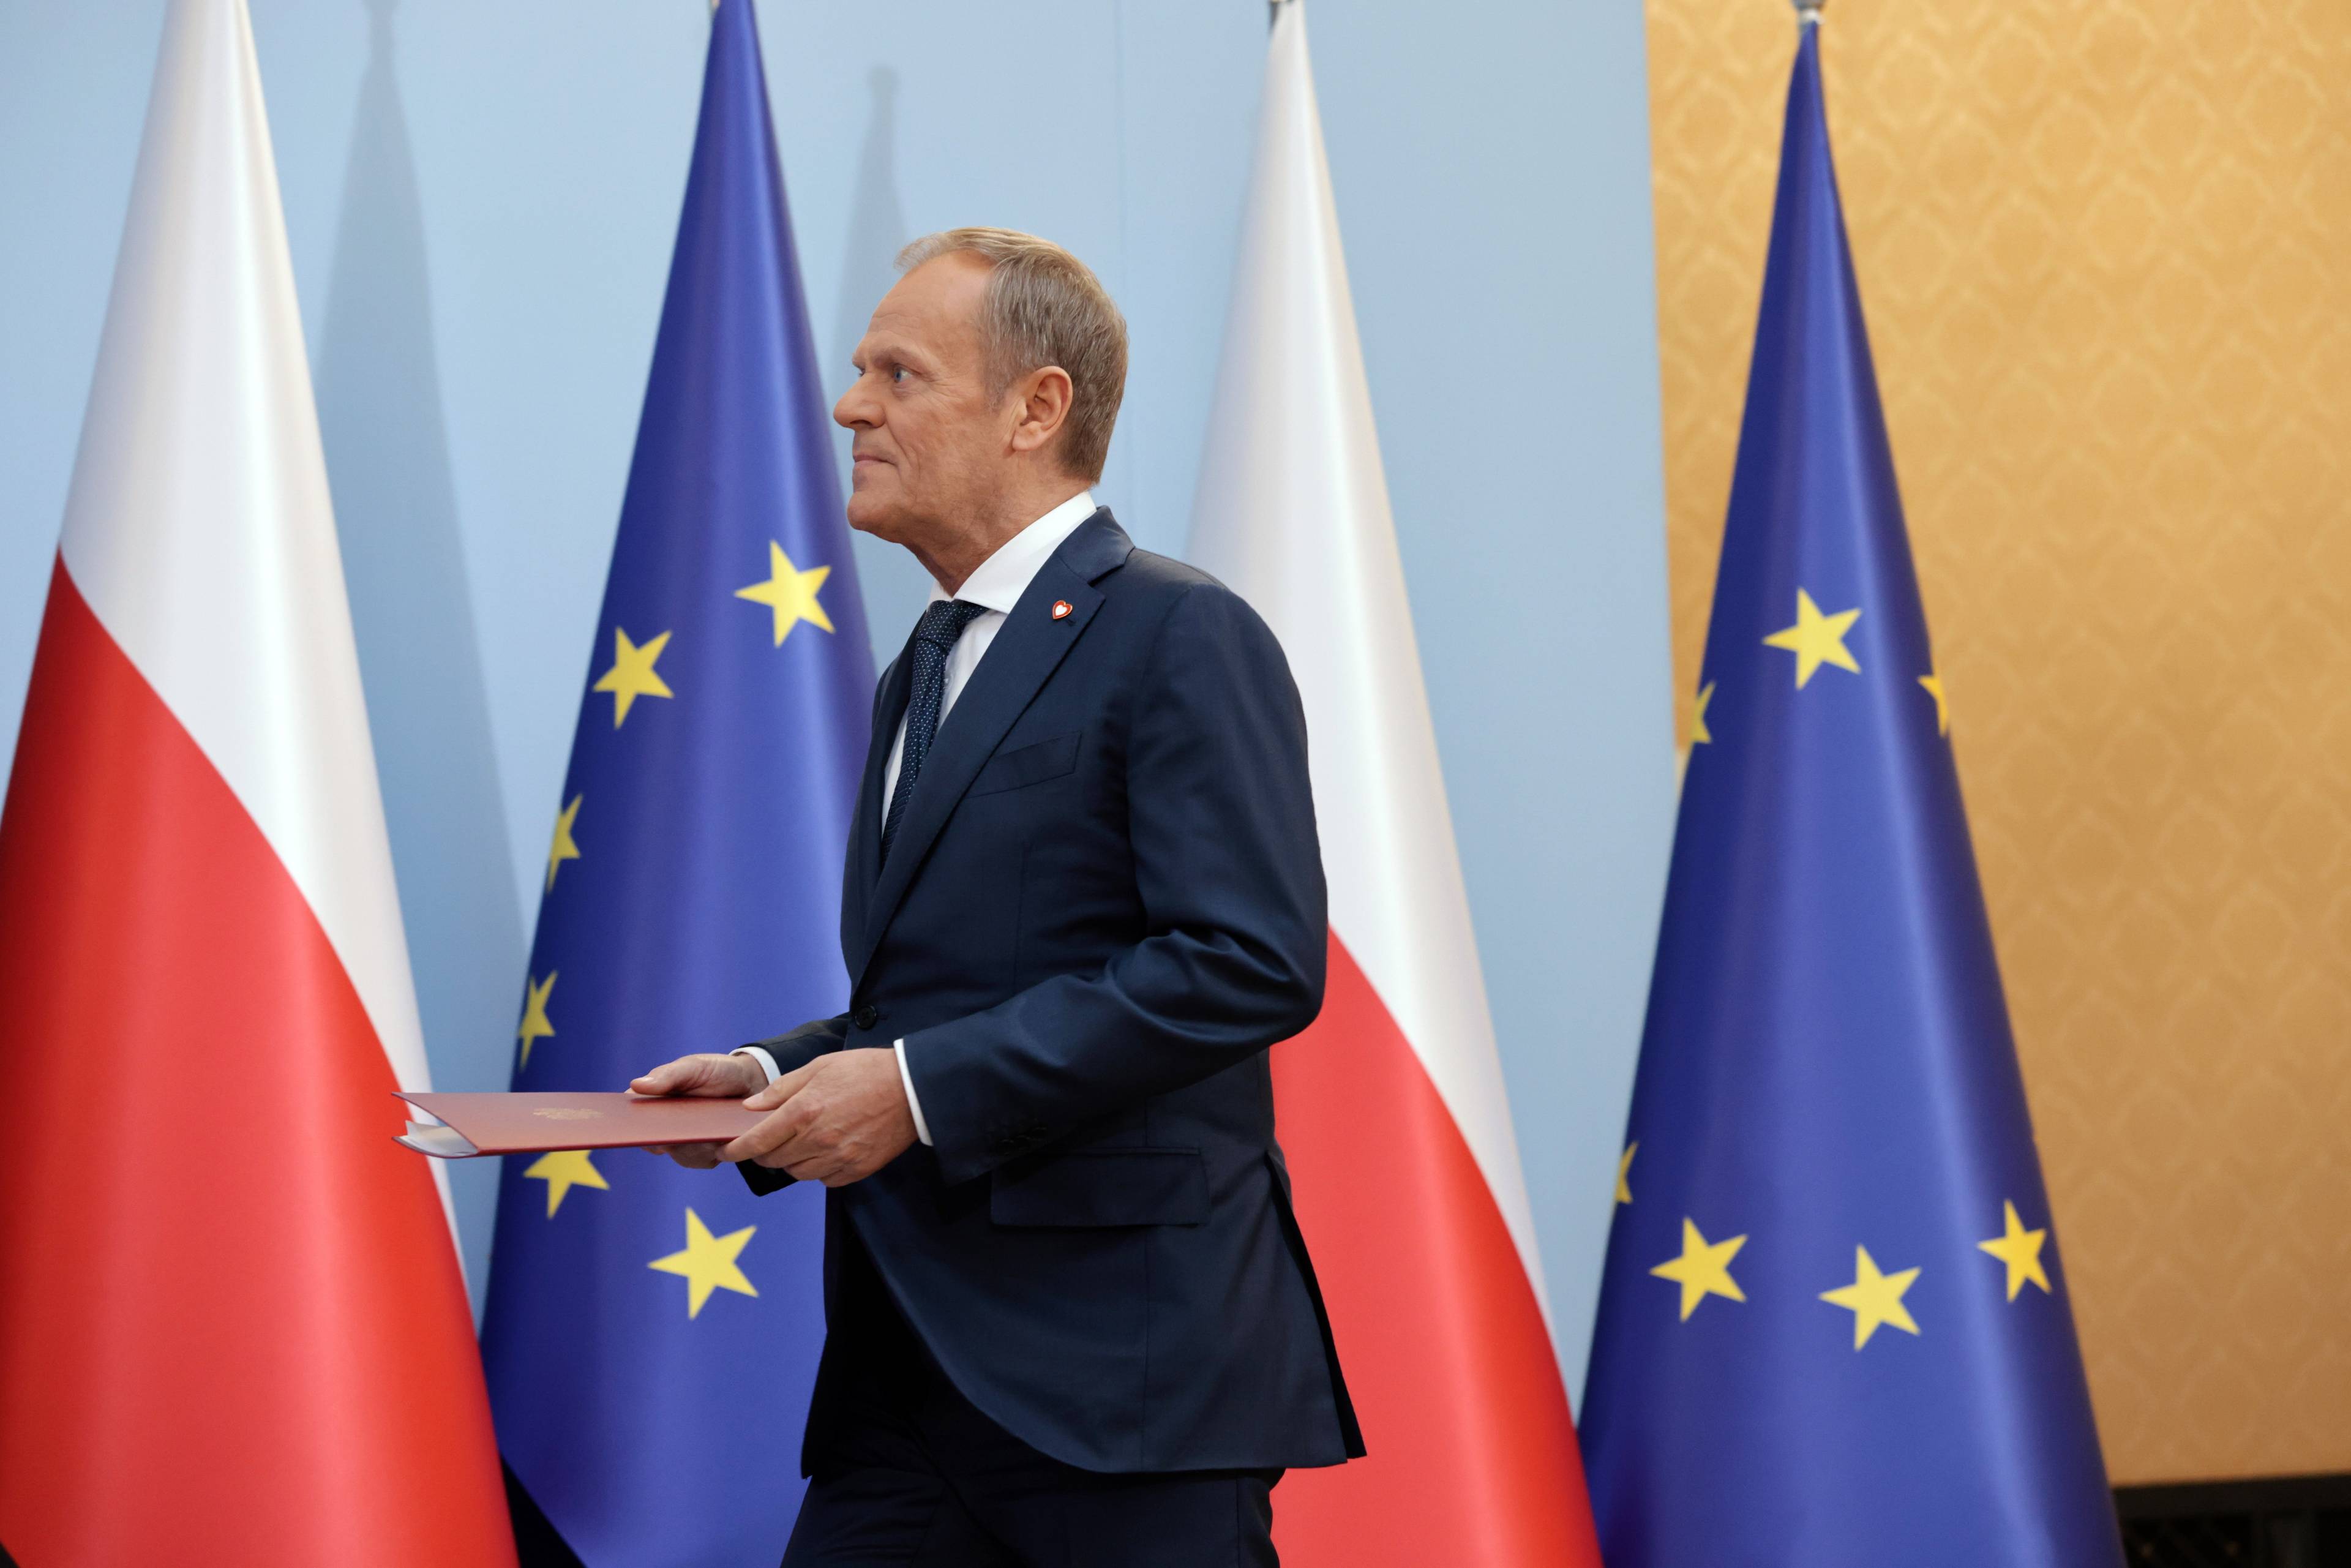 Donald Tusk idzie w lewą stronę w dłoniach trzyma teczkę z dokumentem. W tle flagi Polski oraz Unii Europejskiej